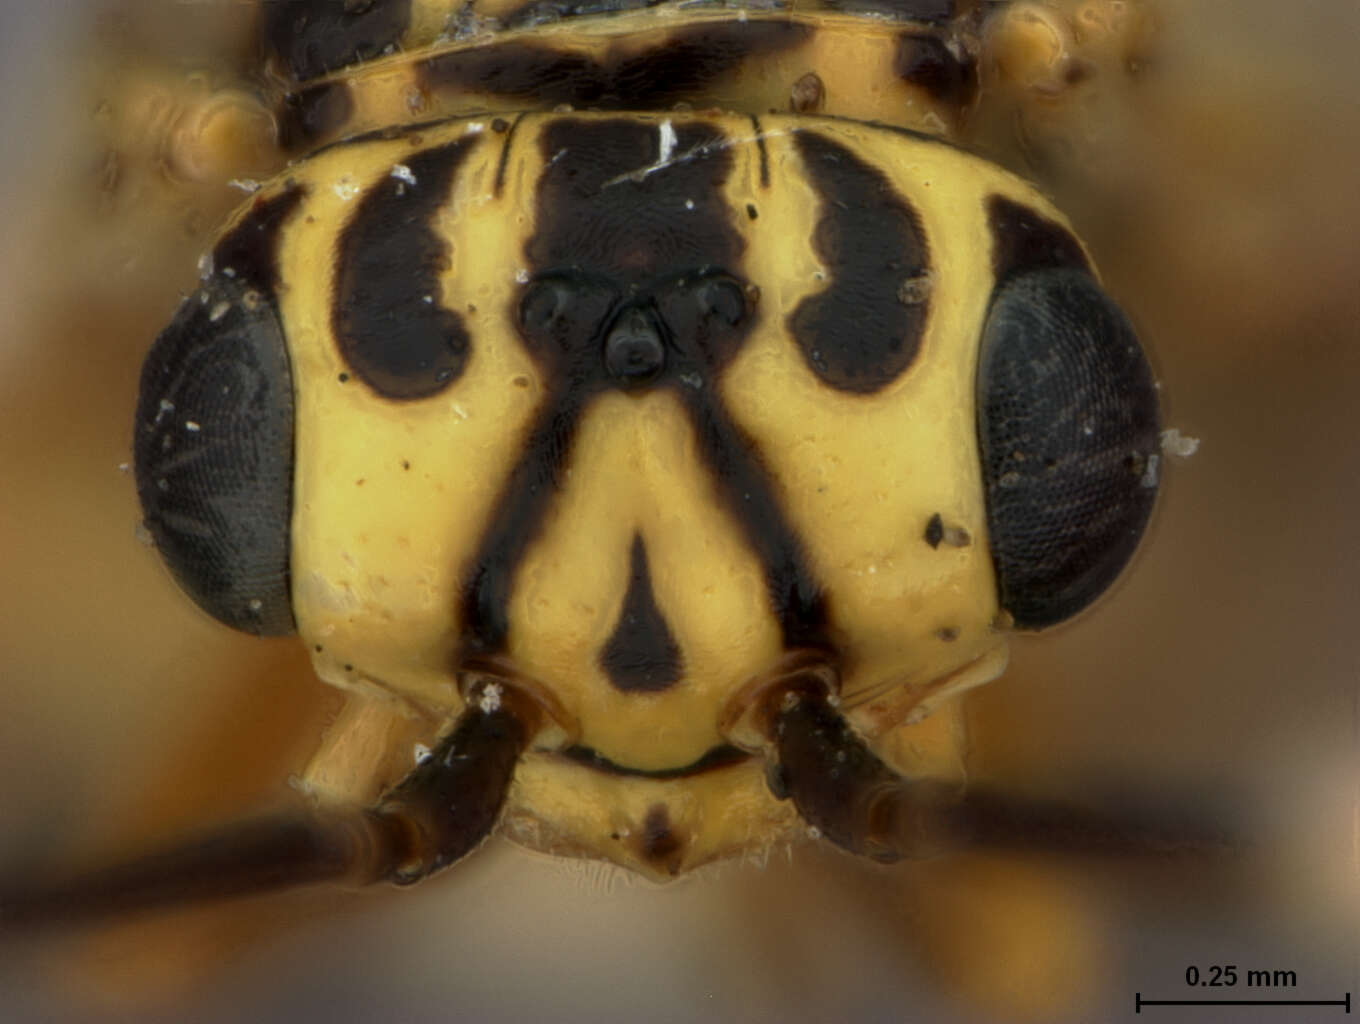 Image of xyelid sawflies